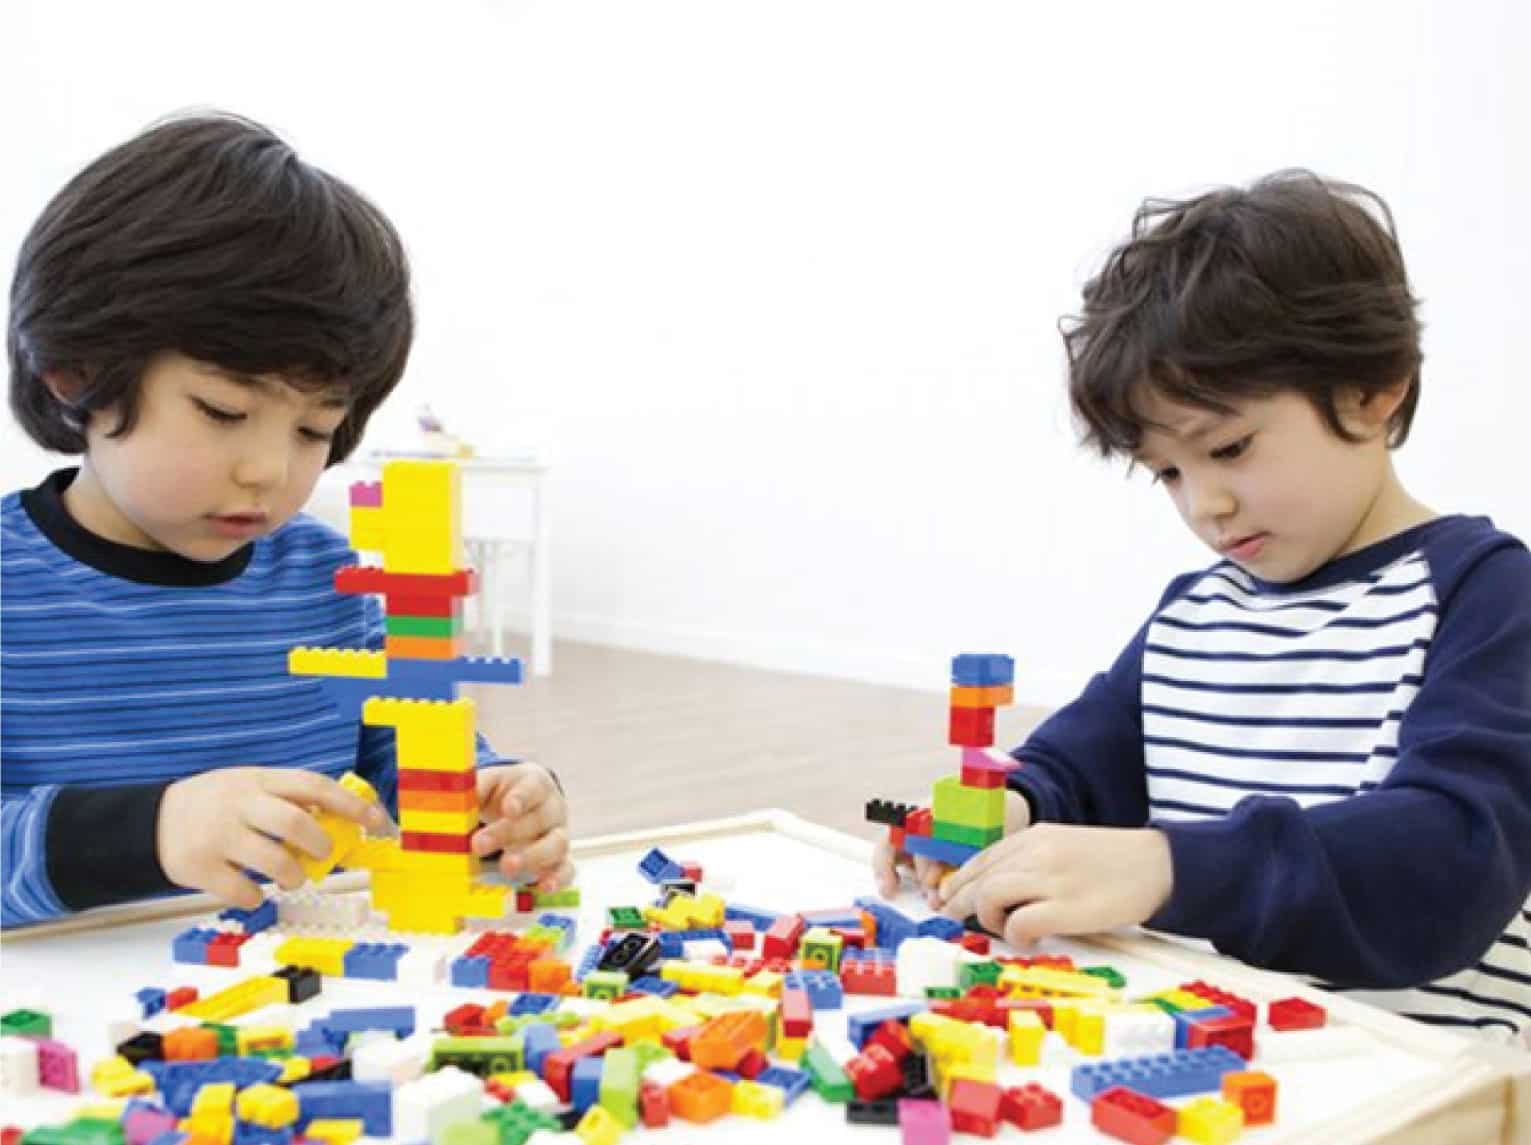 Lego Dapat Mengedukasi Anak